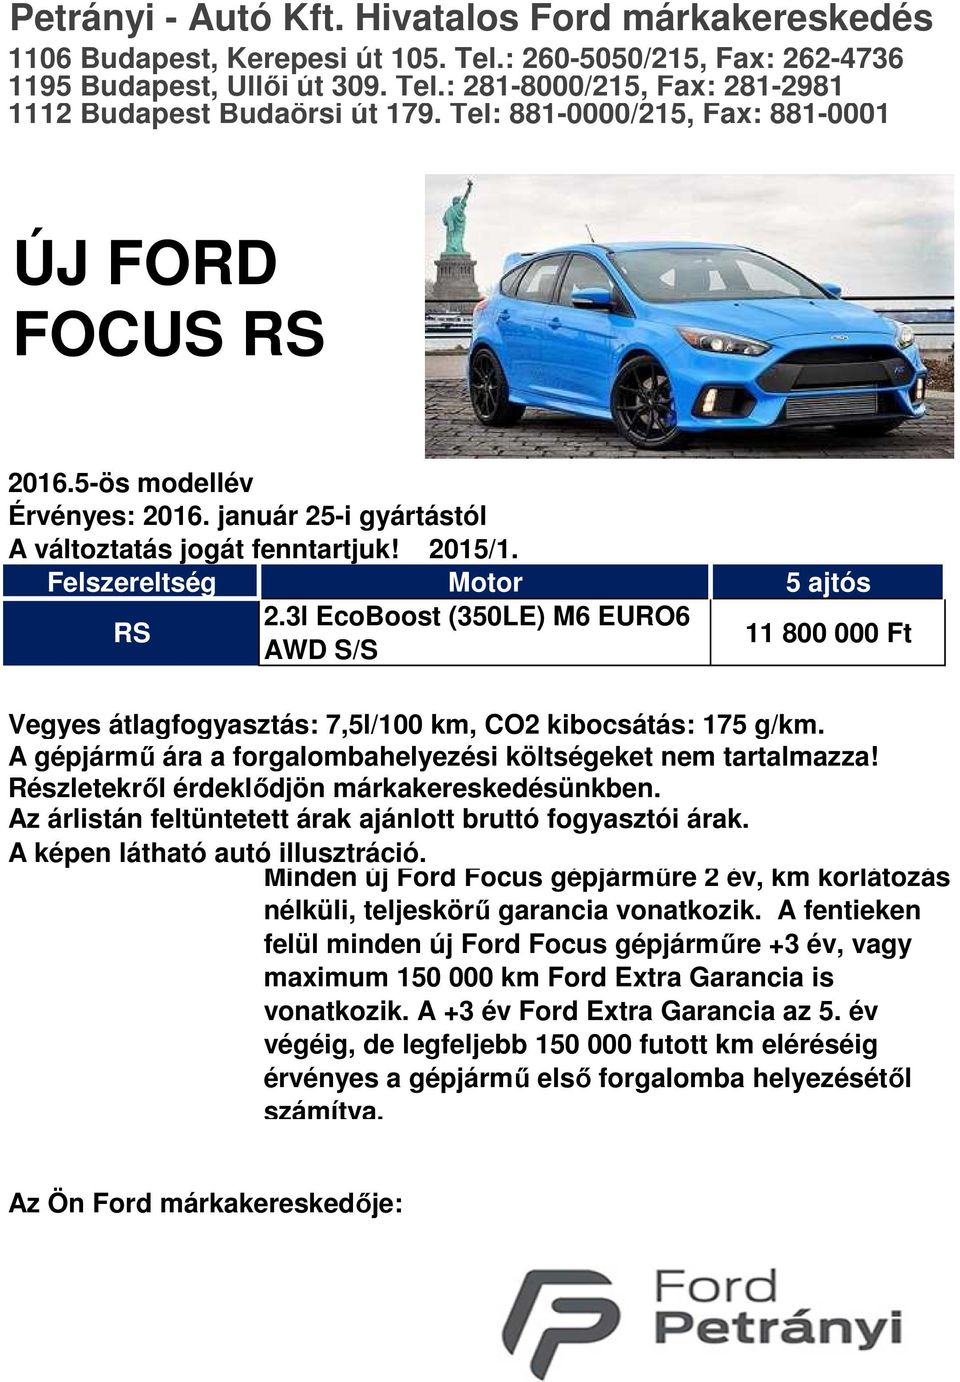 3l EcoBoost (350LE) M6 EURO6 AWD S/S 11 800 000 Ft Vegyes átlagfogyasztás: 7,5l/100 km, CO2 kibocsátás: 175 g/km. A gépjármű ára a forgalombahelyezési költségeket nem tartalmazza!